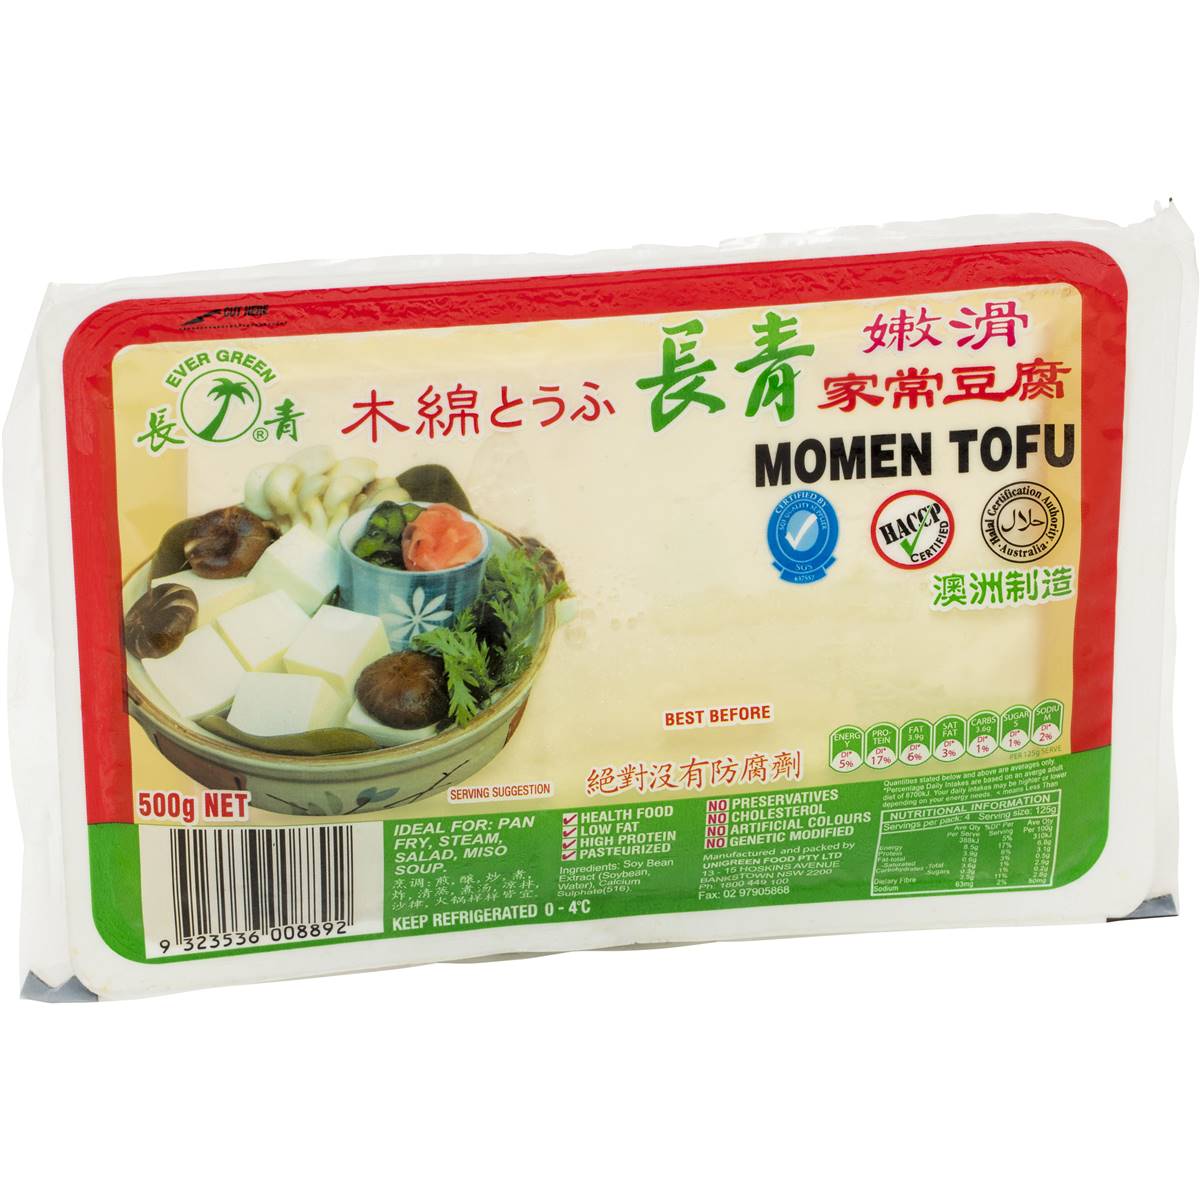 Calories in Evergreen Momen Tofu